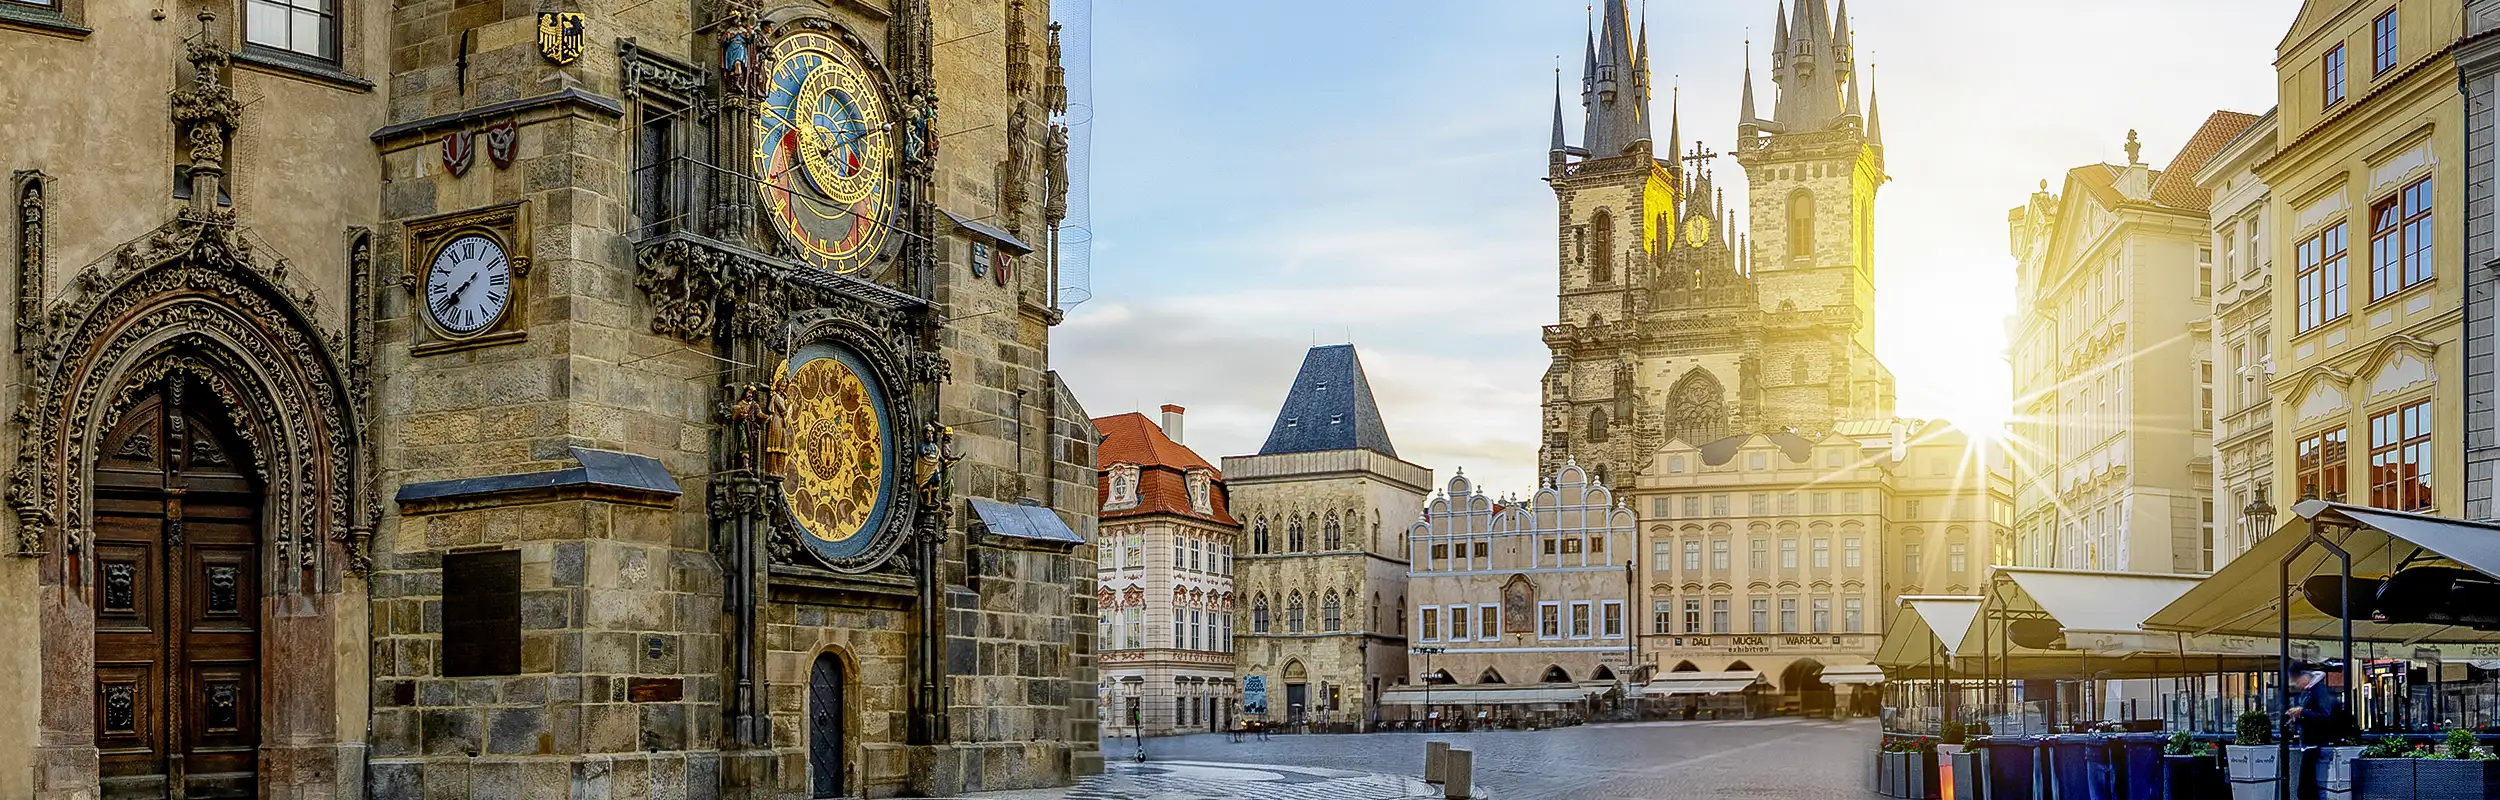 Blick auf die astronomische Uhr in Prag